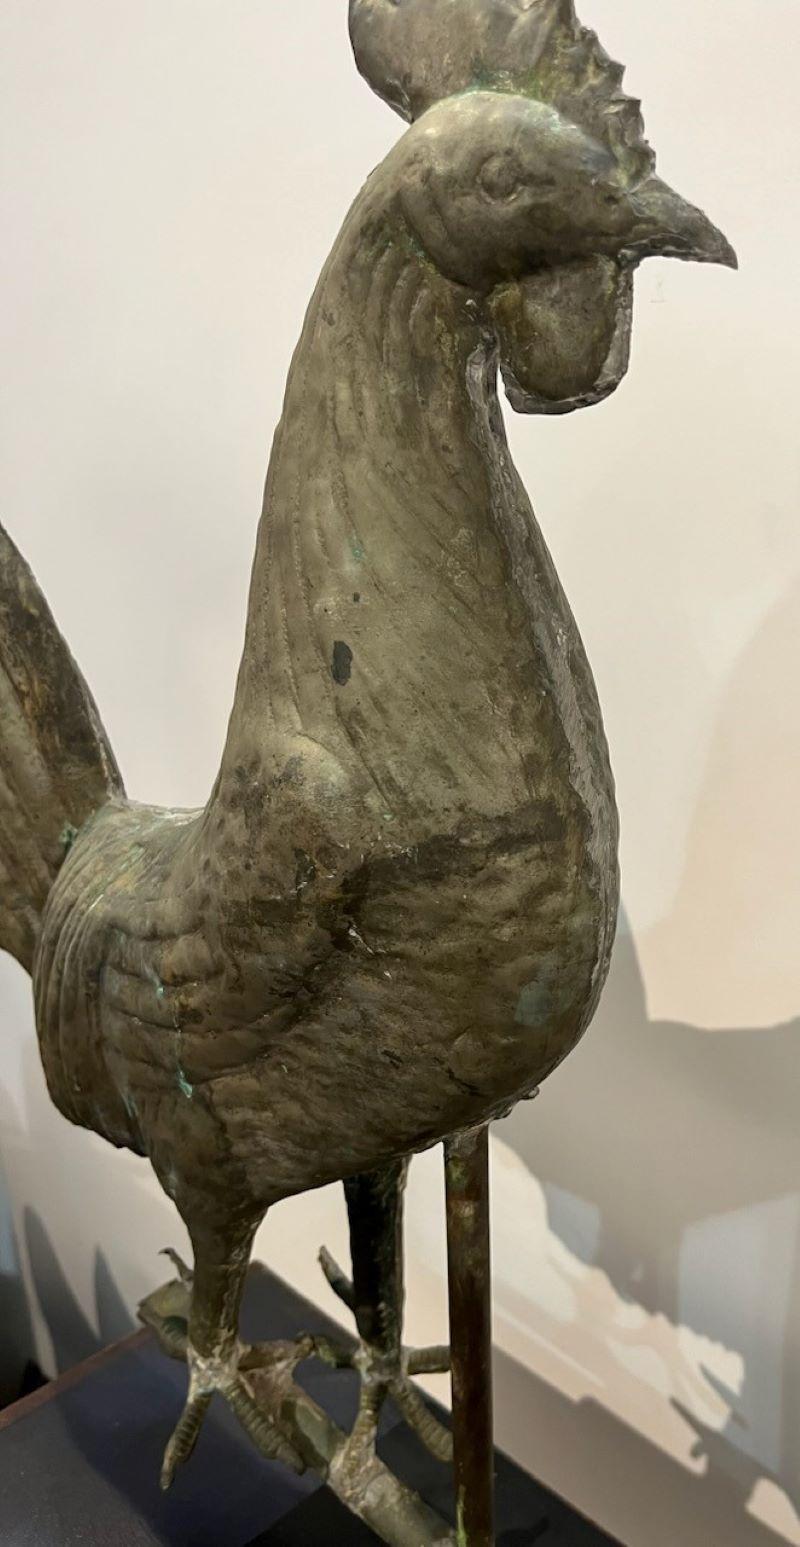 Ganzkörper-Wetterfahne aus dem 19. Jahrhundert mit Hahn auf speziellem Eisensockel. Dieser Hahn hat eine abgenutzte und gealterte Patina von einer zinkfarbenen Oberfläche. Das Gewicht ist sehr gut und das Lot in der scheint durch. Dies ist eine